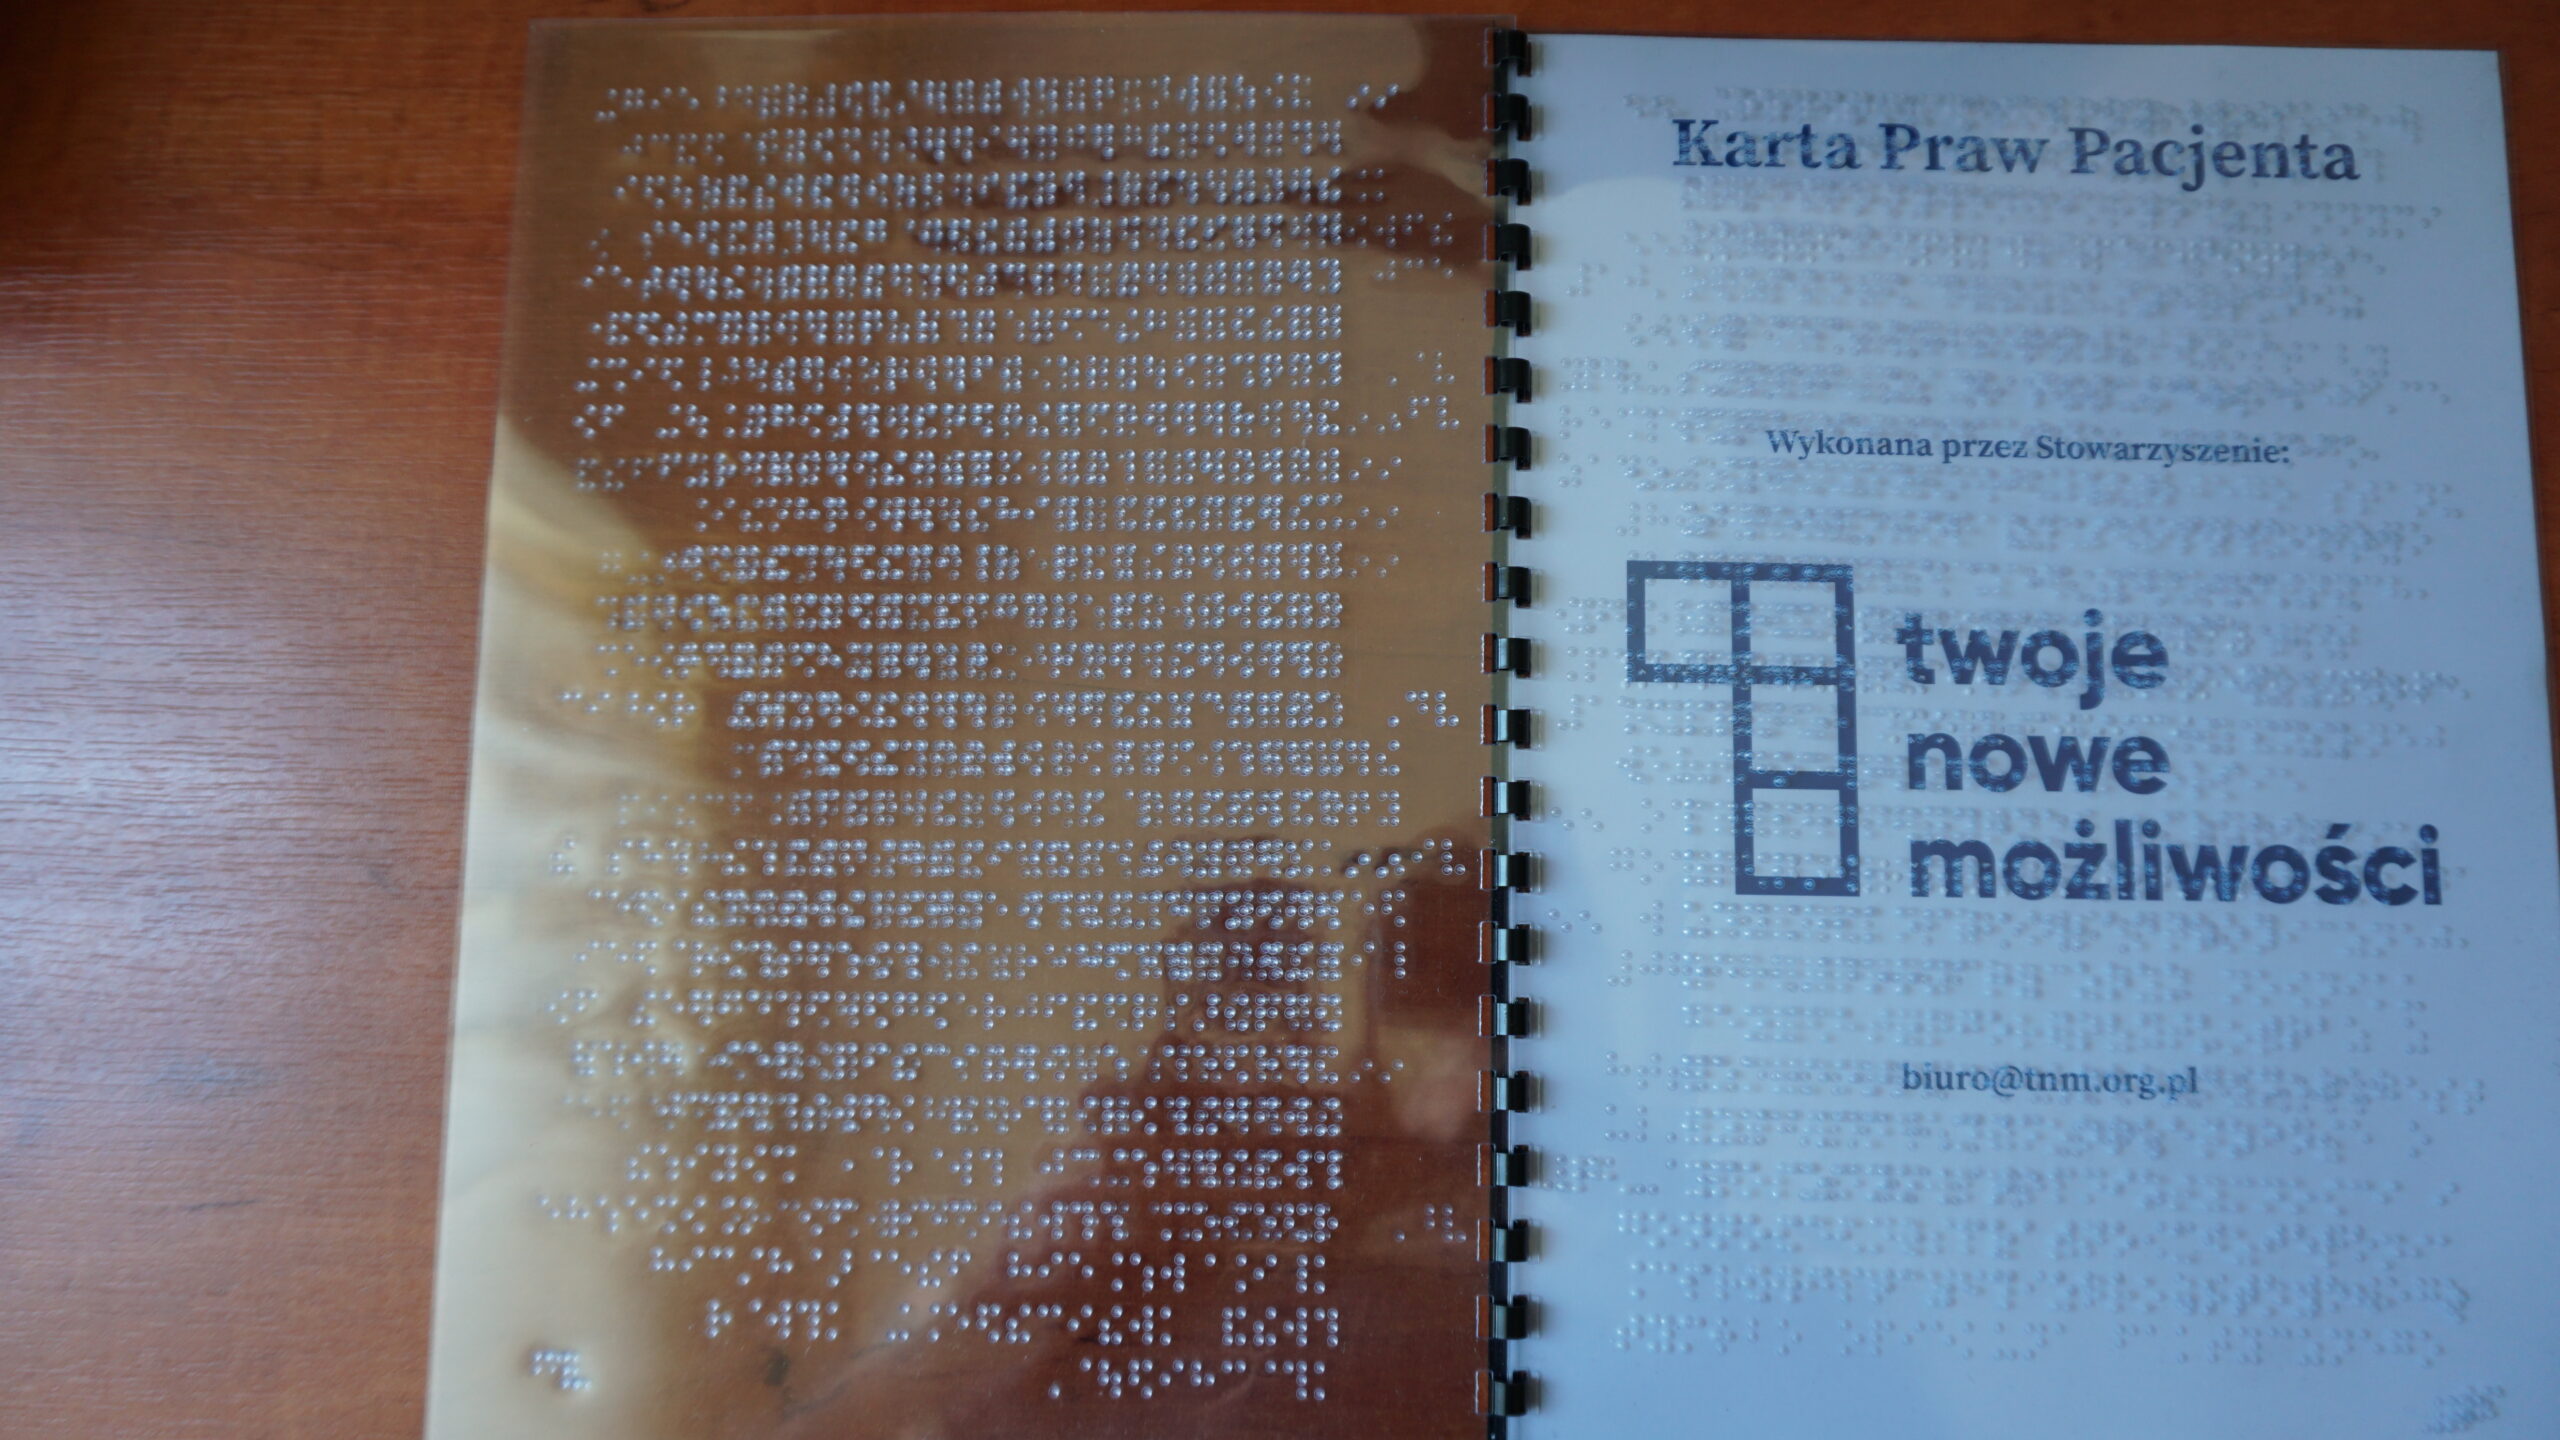 Karta Prawa Pacjenta w alfabecie Braille’a